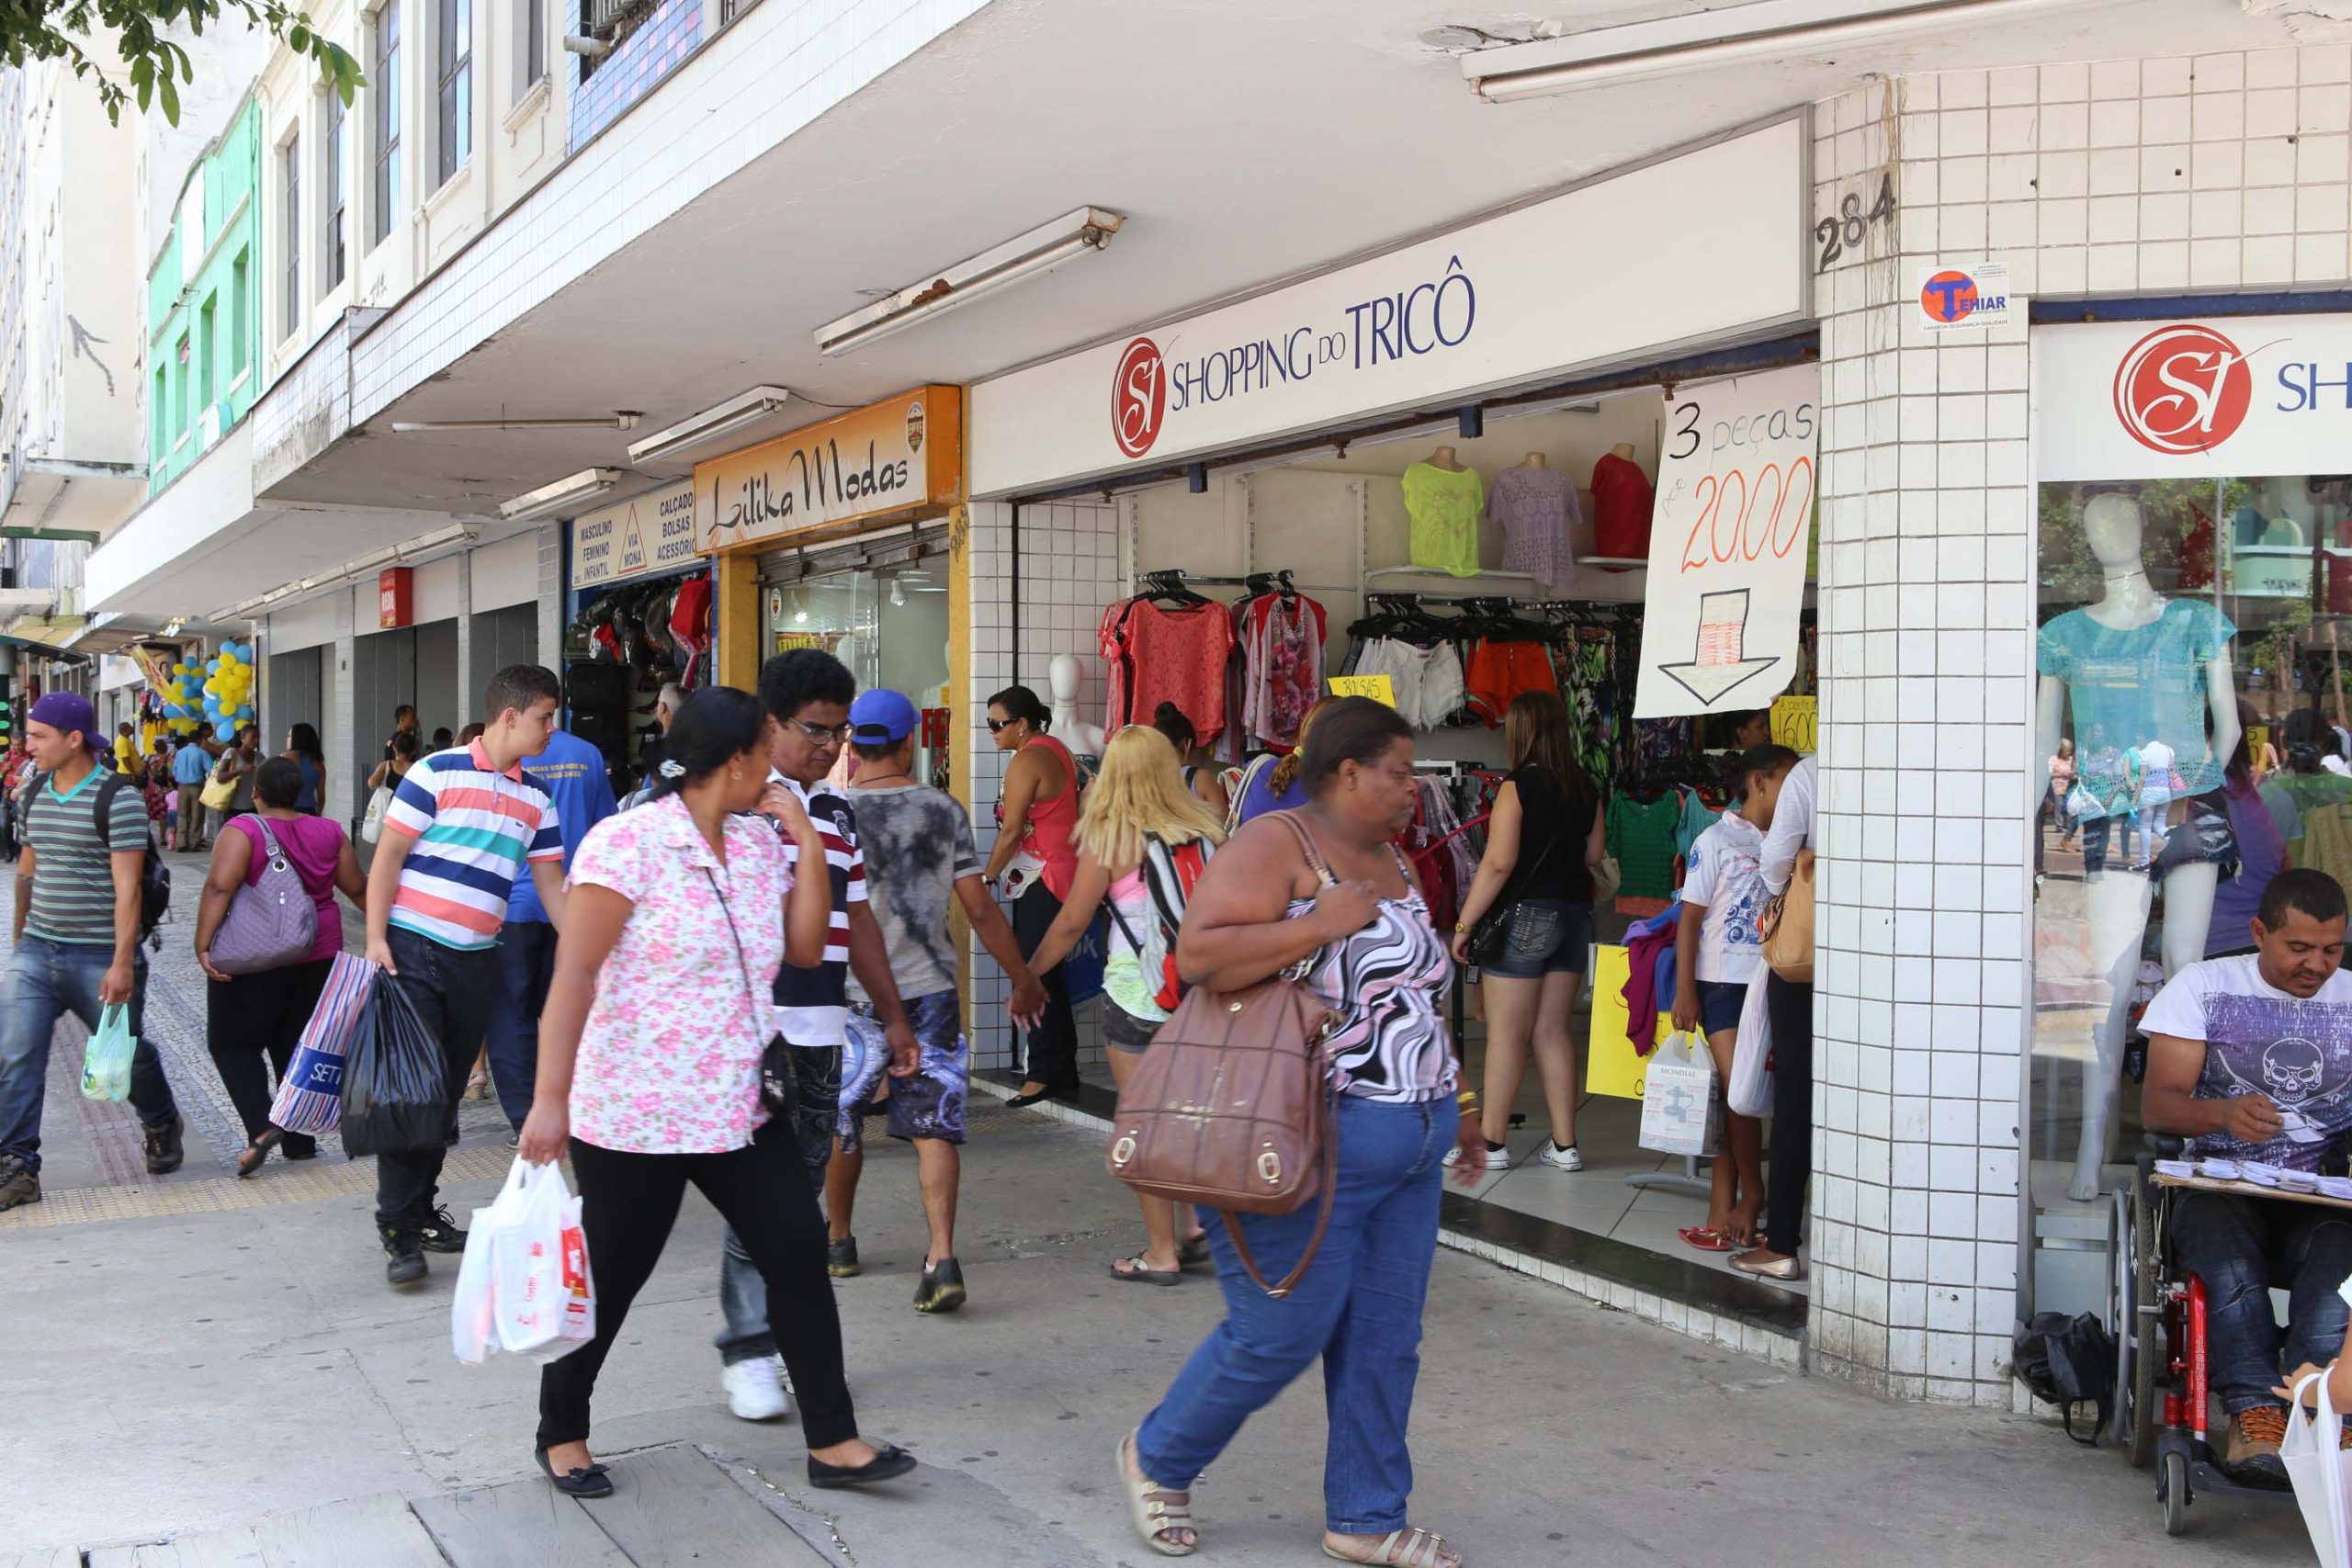 Funcionamento do comércio lojista no feriado de 15 de agosto (quarta-feira)  em em Belo Horizonte - CDL BH - Câmara de Dirigentes Lojistas de Belo  Horizonte